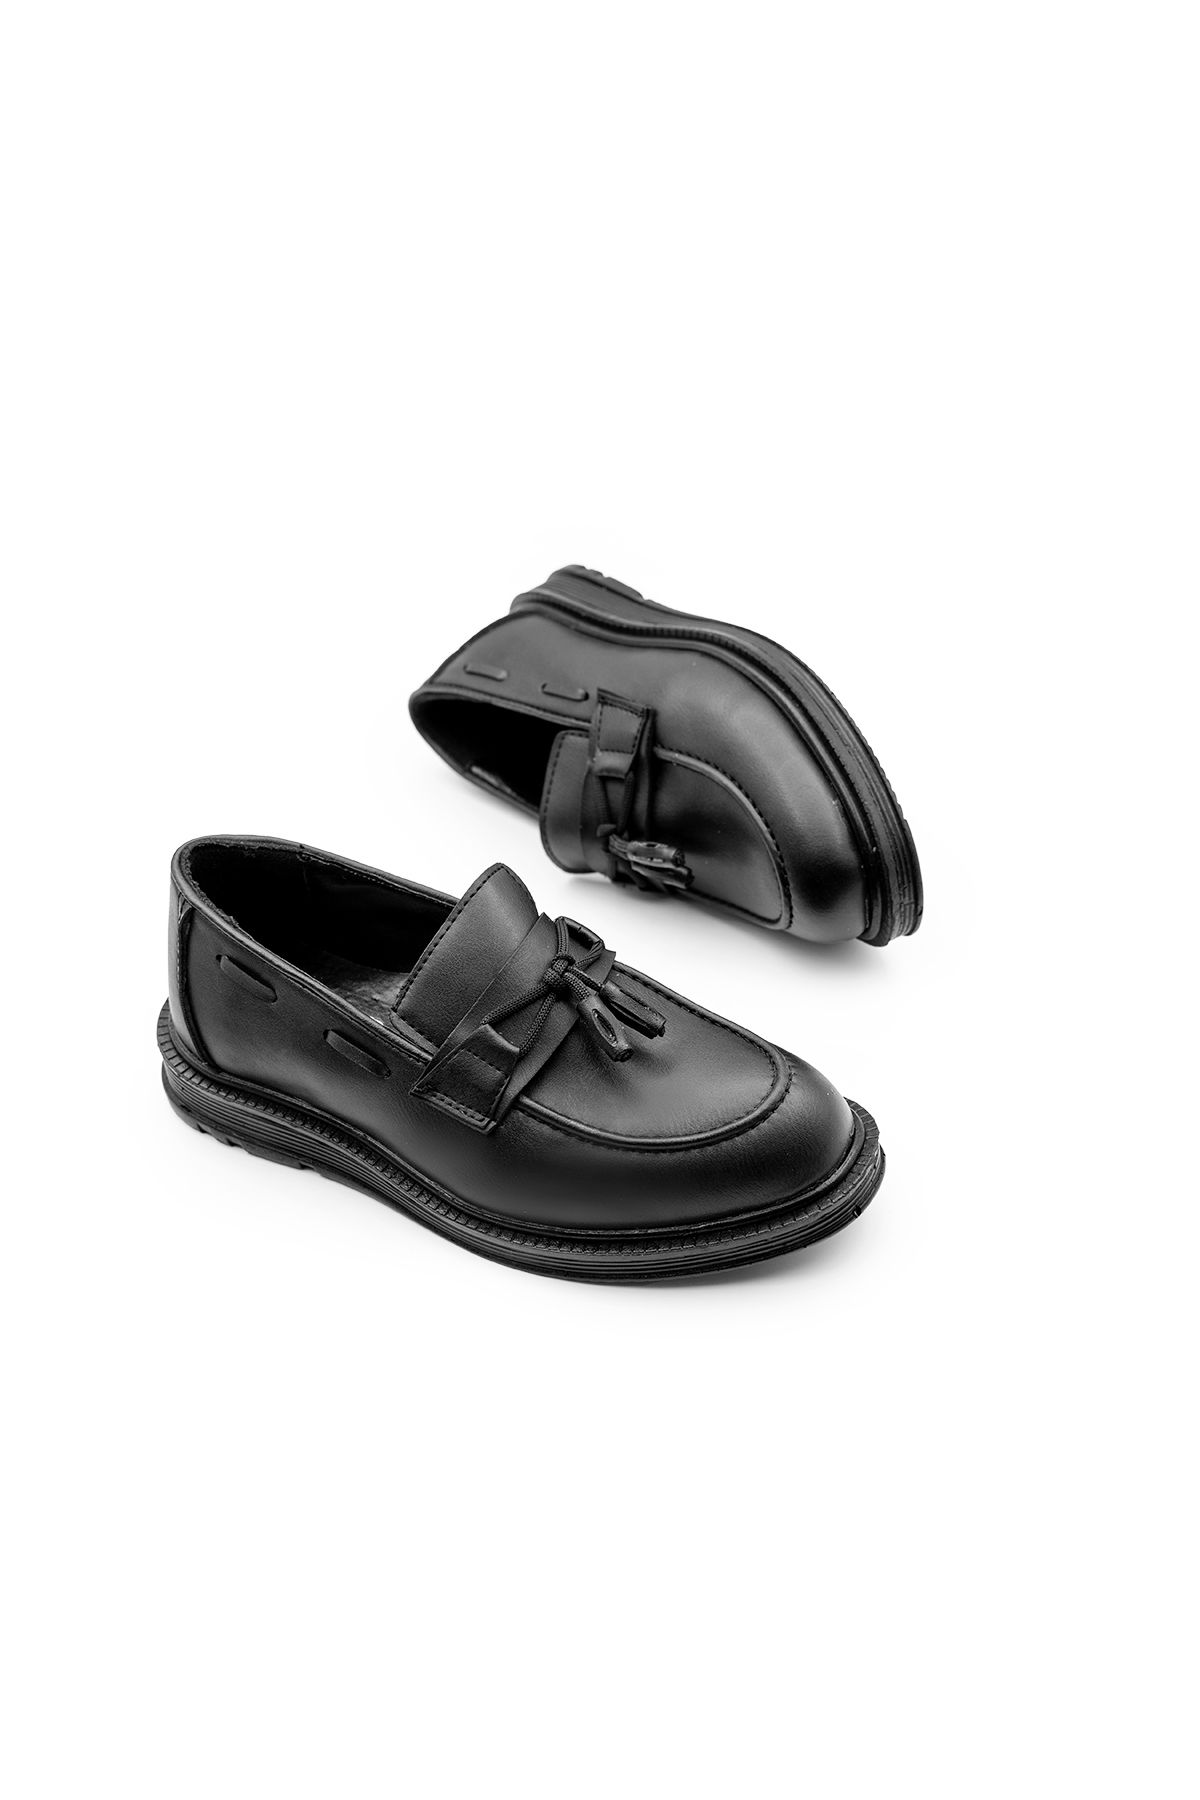 Brono Ayakkabı Erkek Çocuk Günlük Klasik Ayakkabı 1319